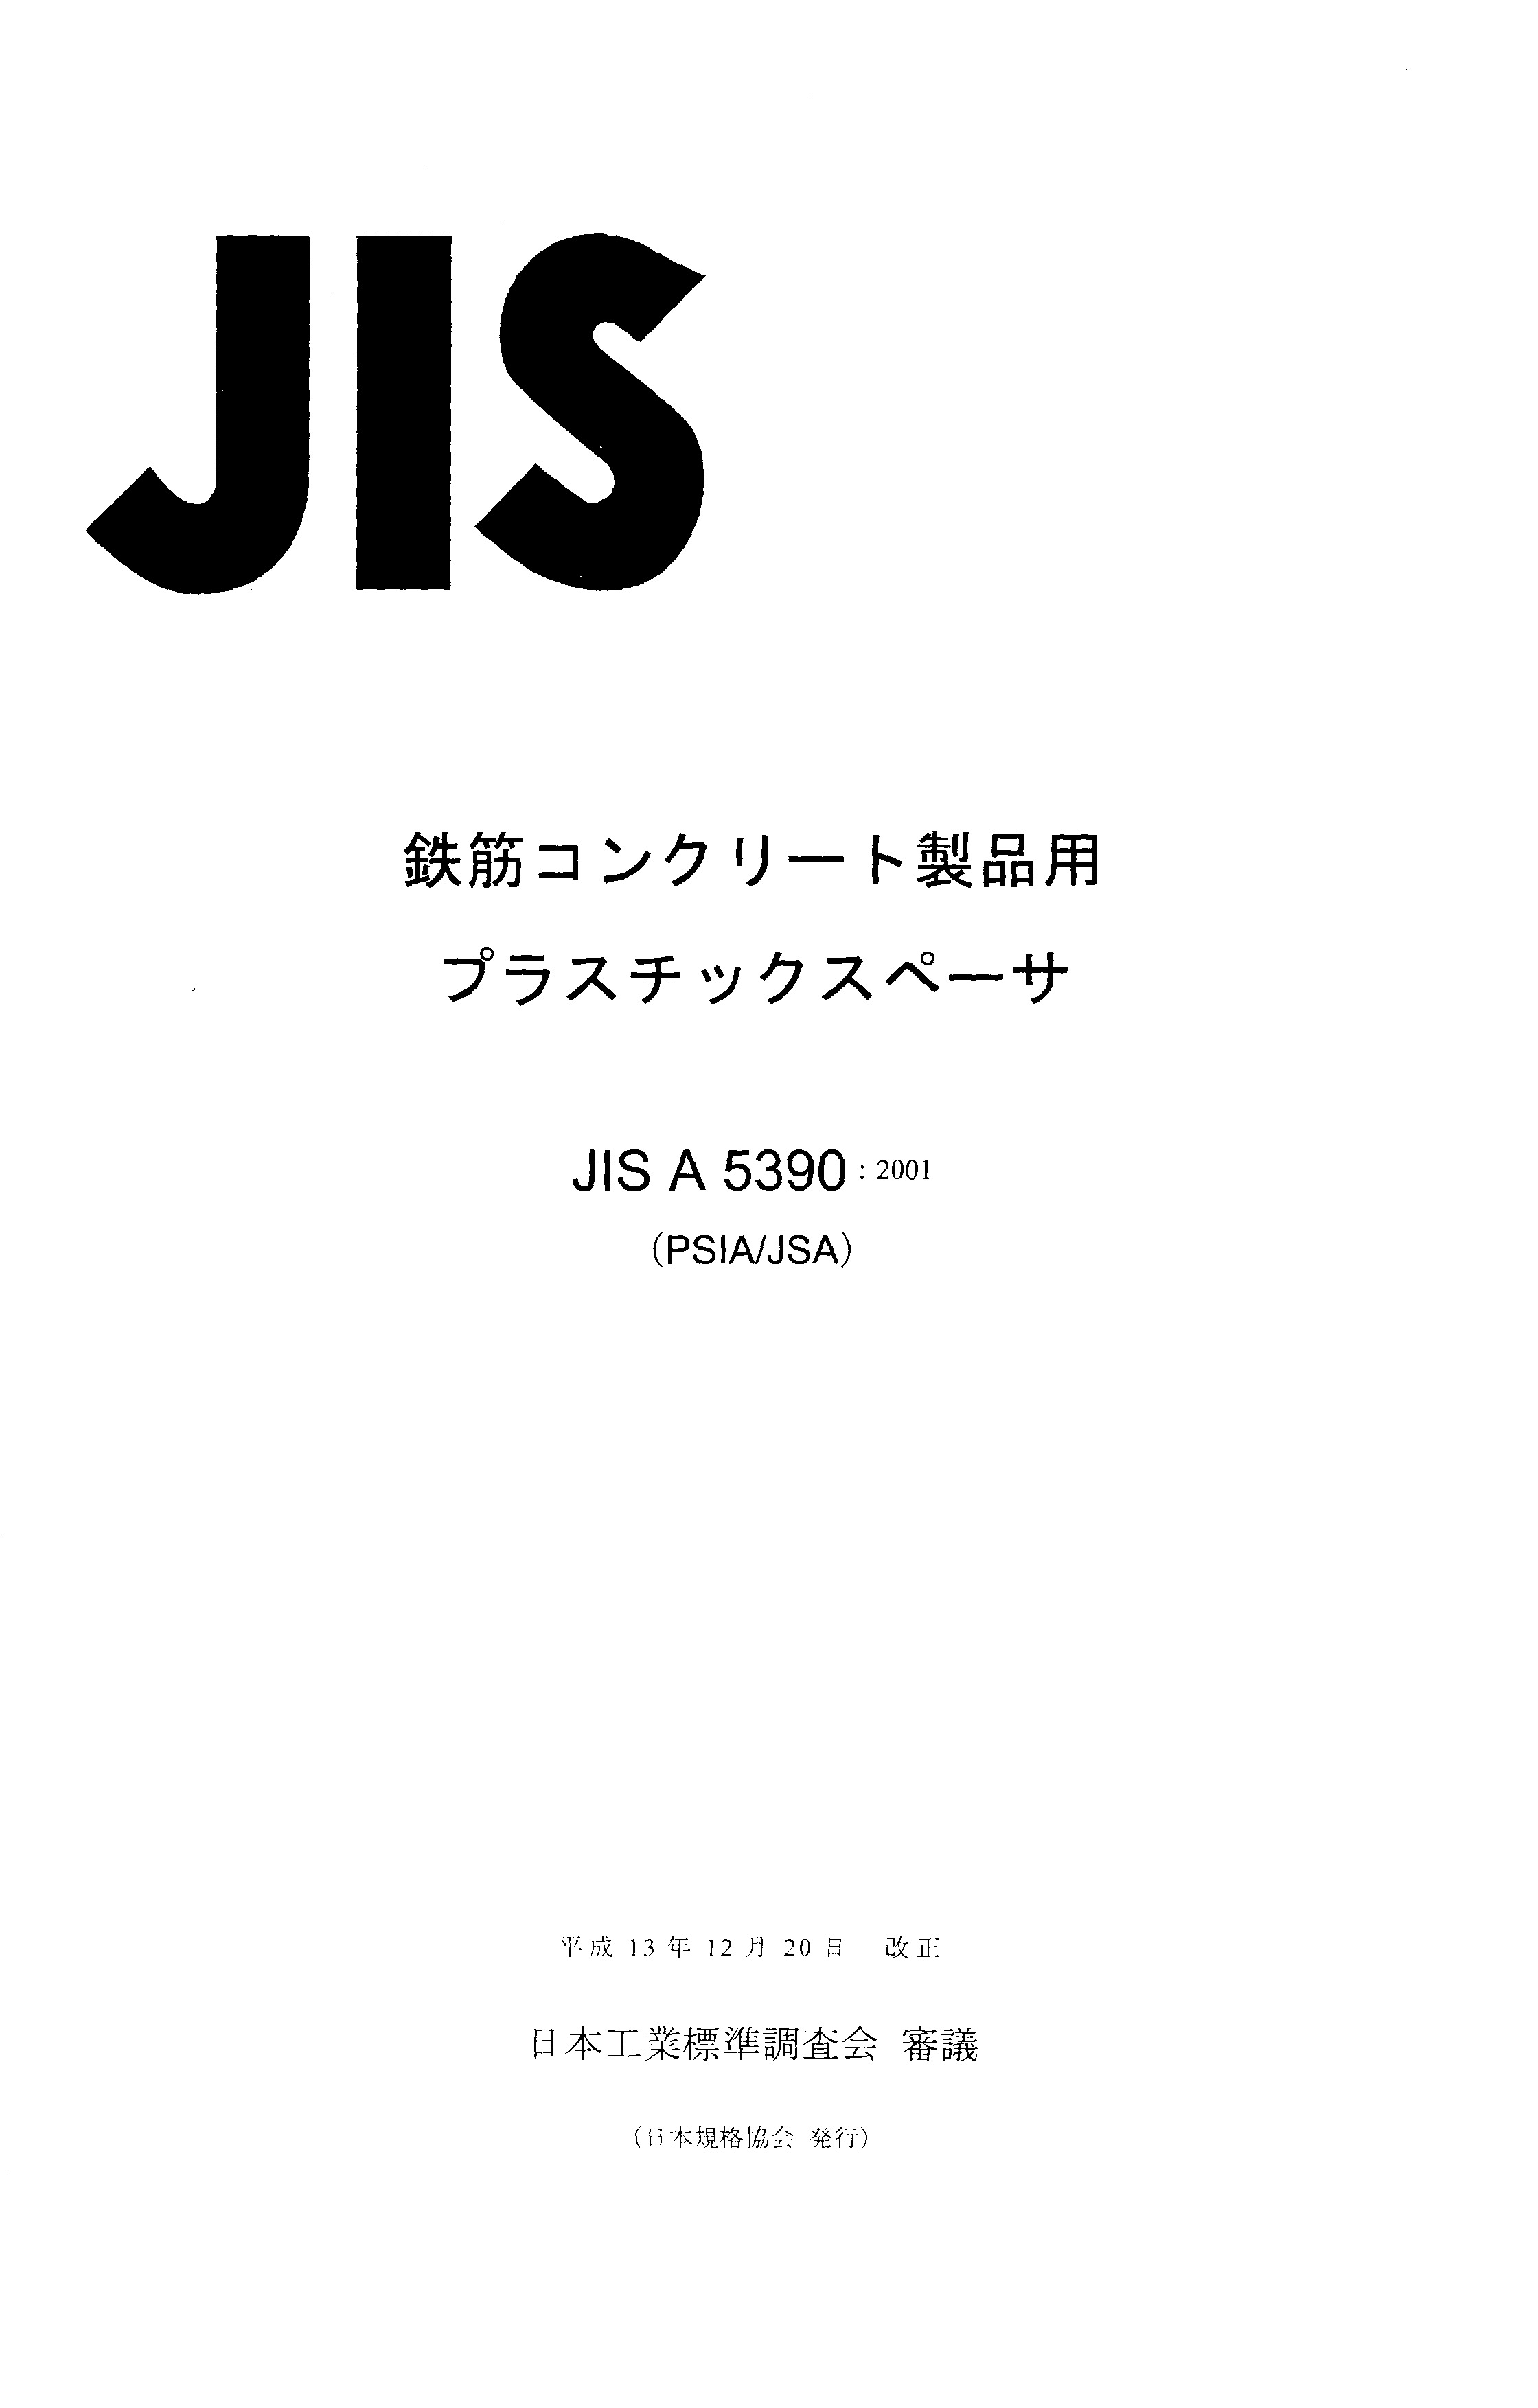 JIS A 5390:2001